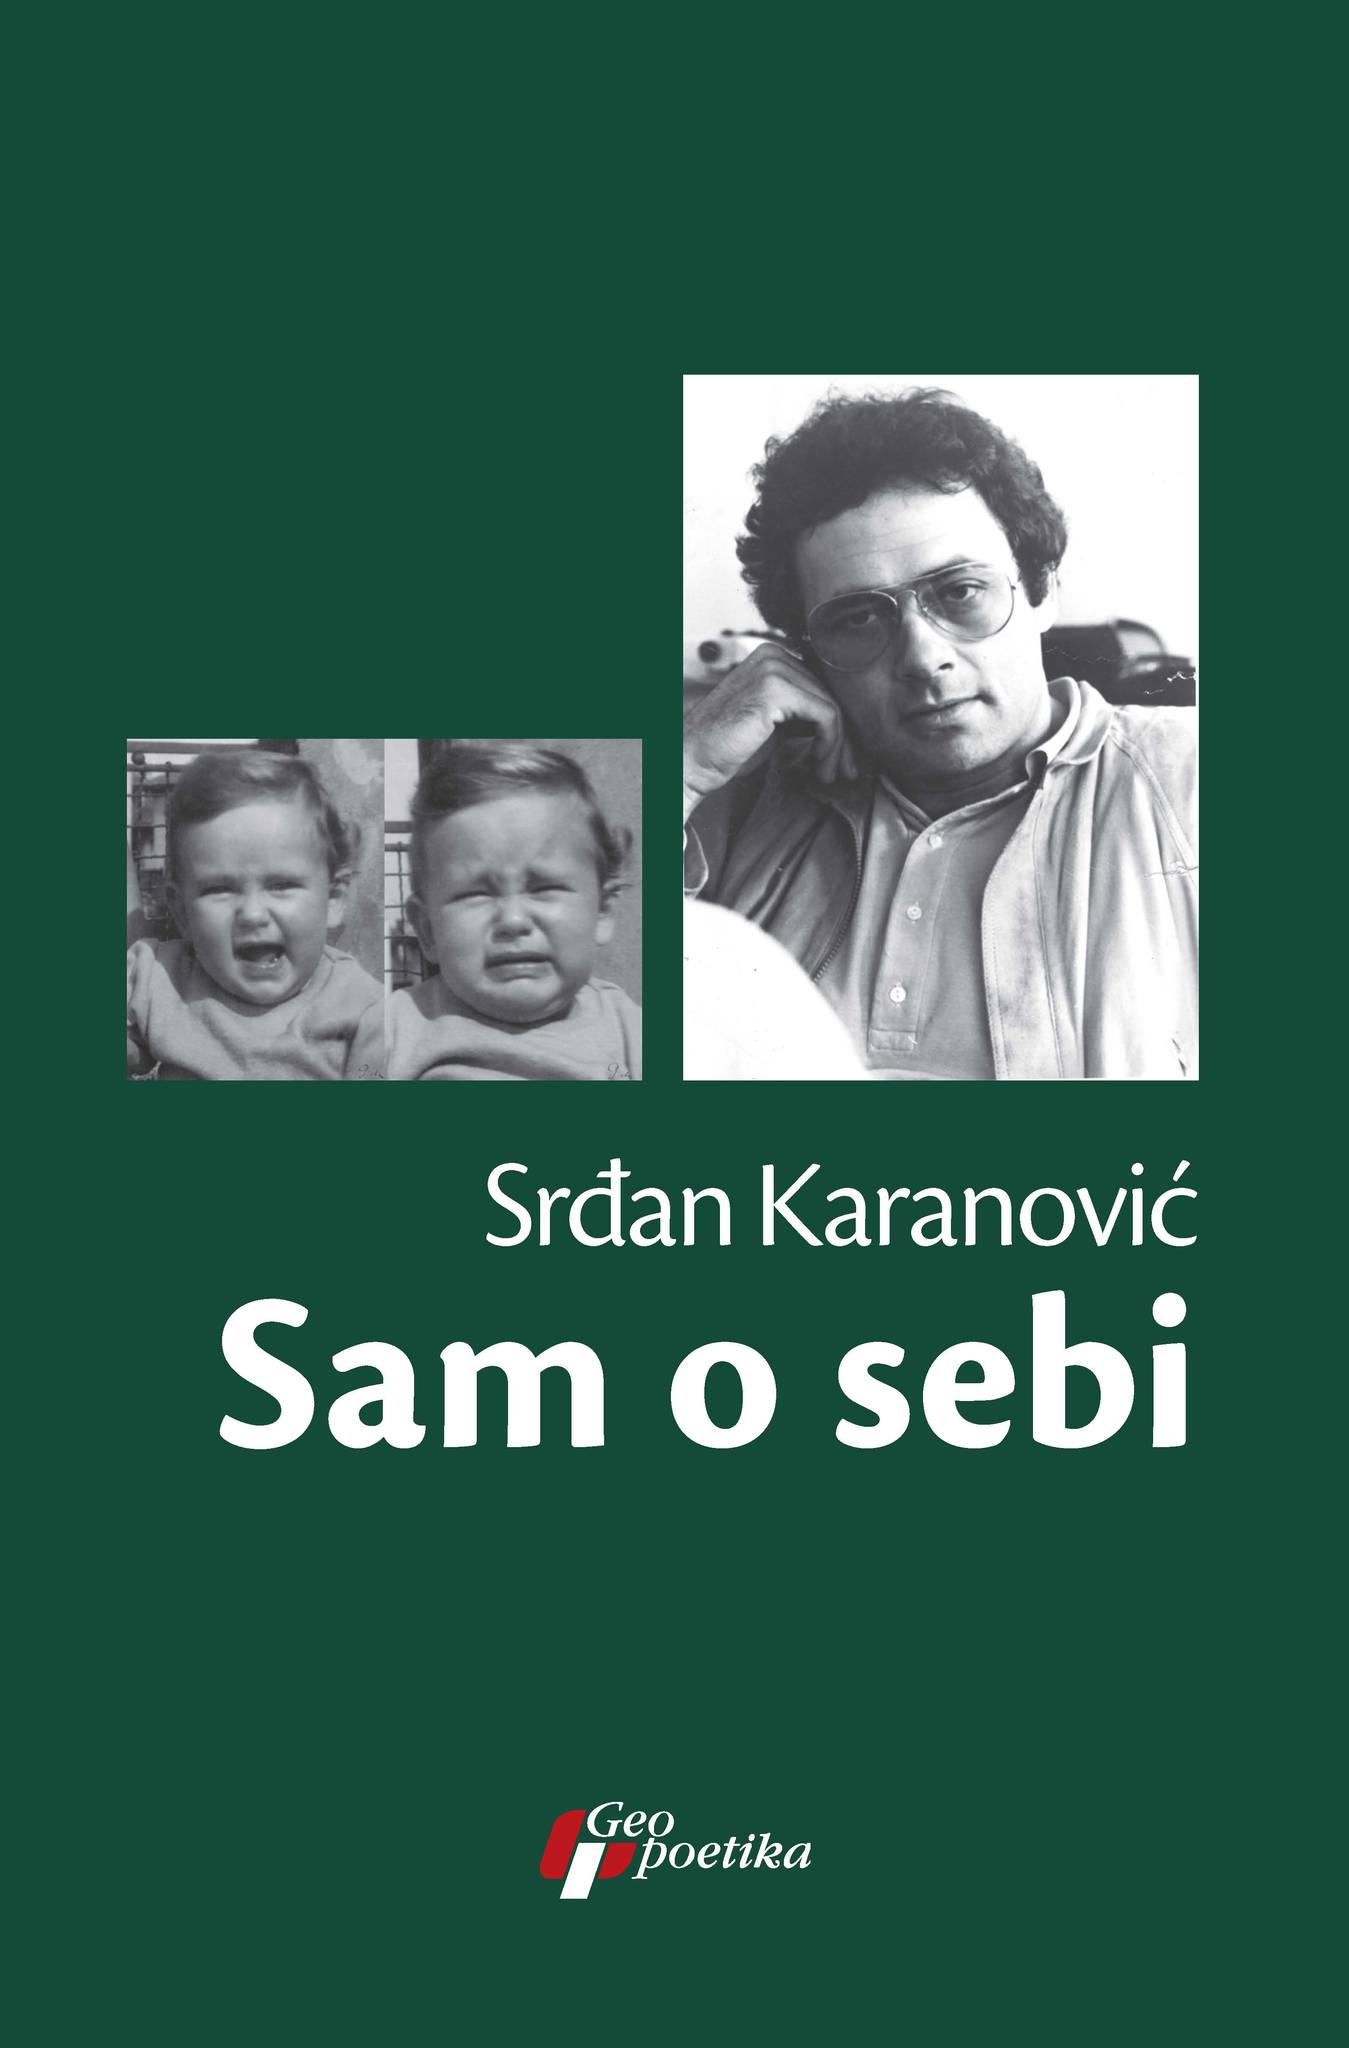 Srdjan Karanovic – Sam o sebi